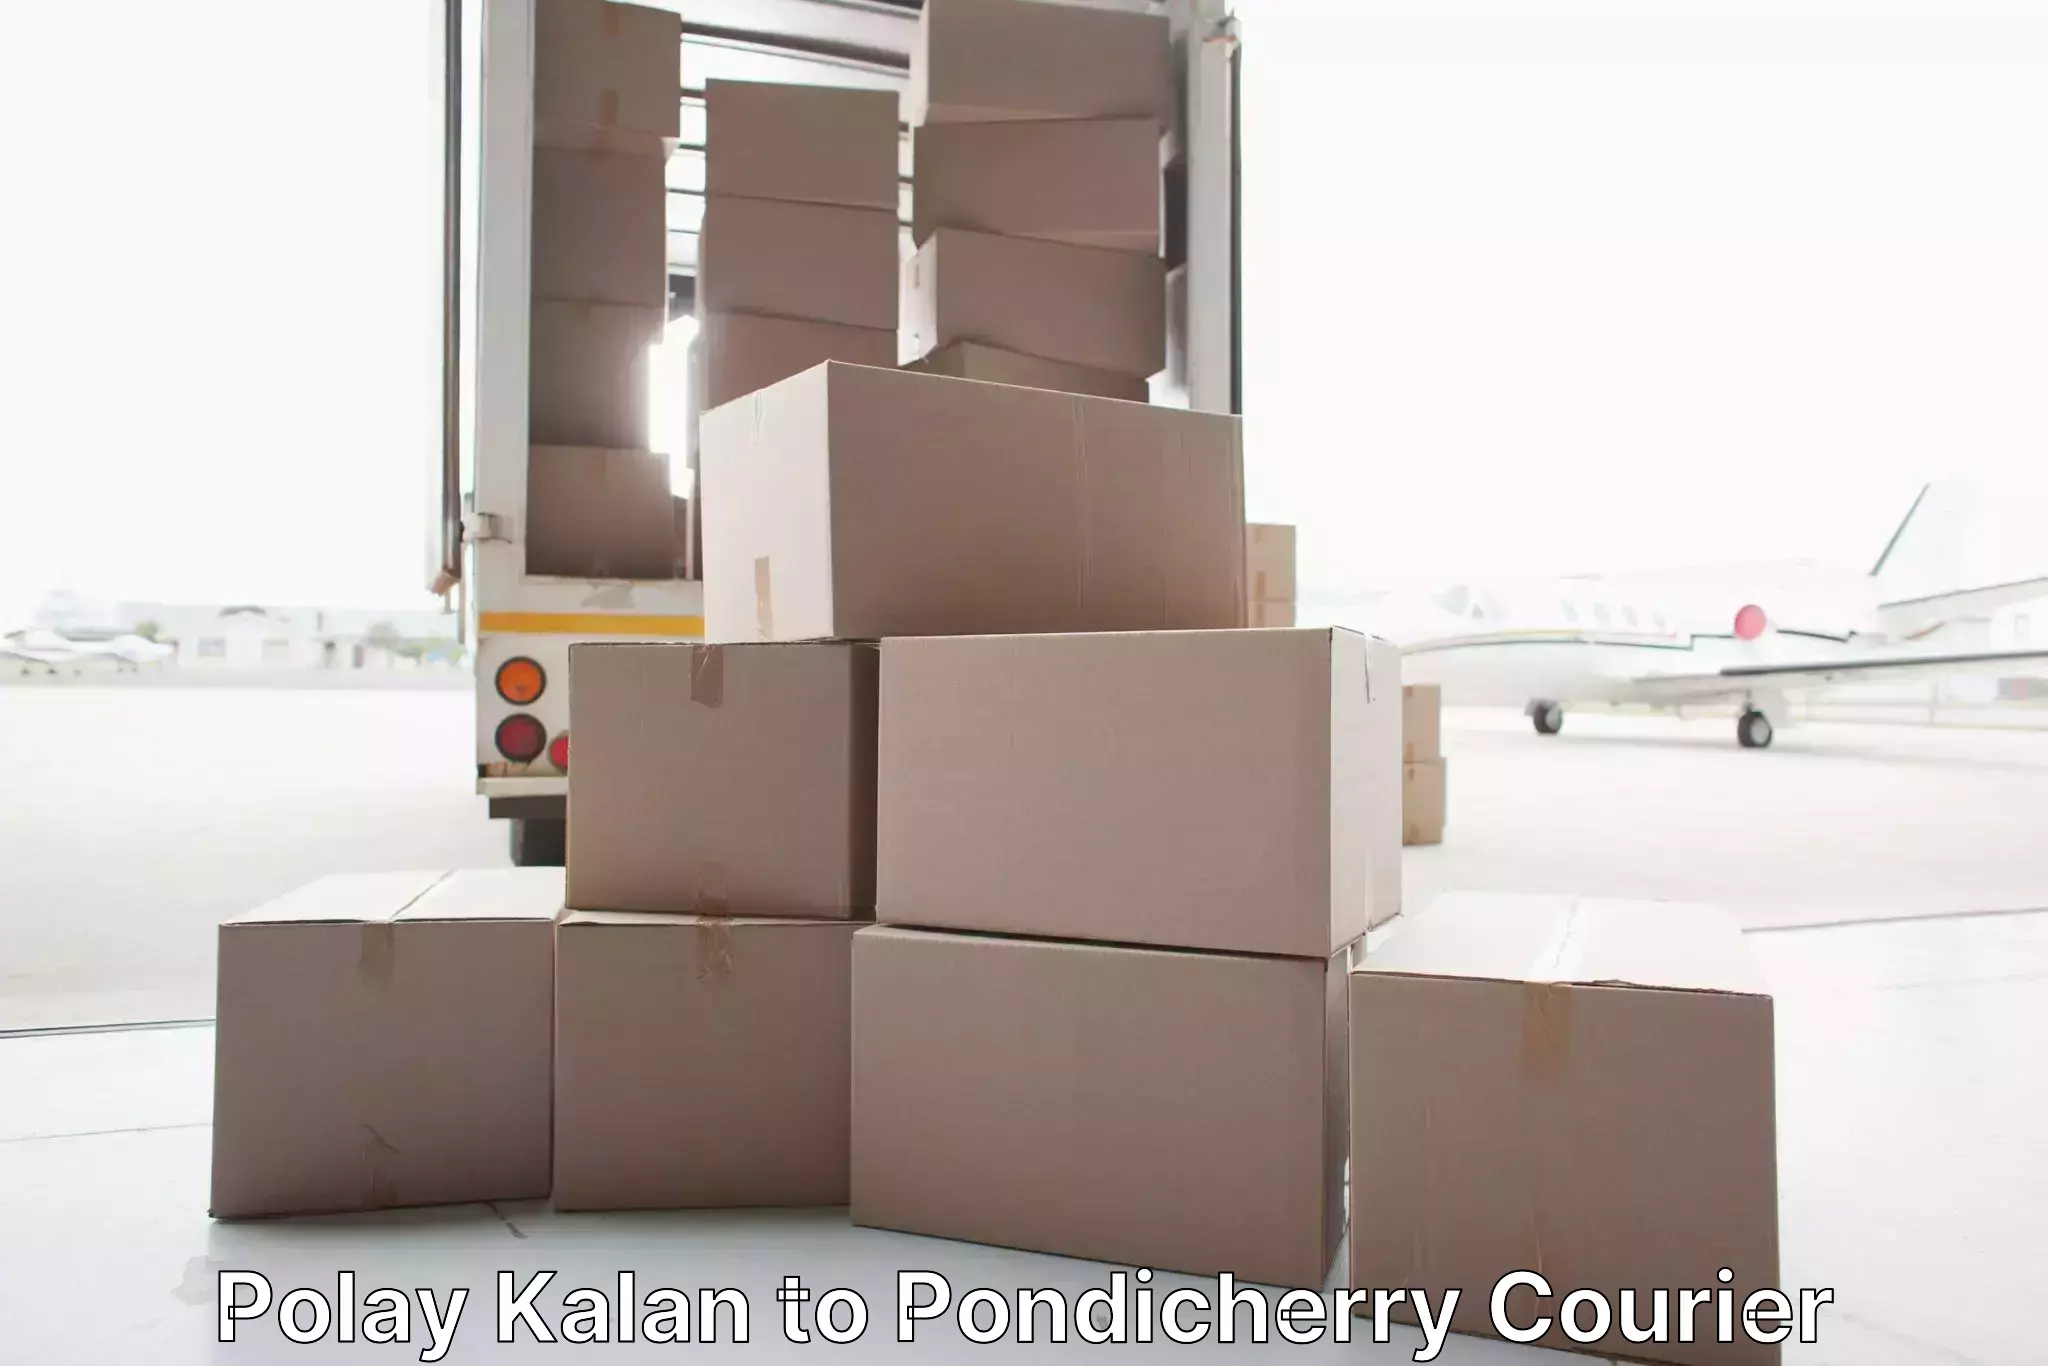 Household moving companies Polay Kalan to Pondicherry